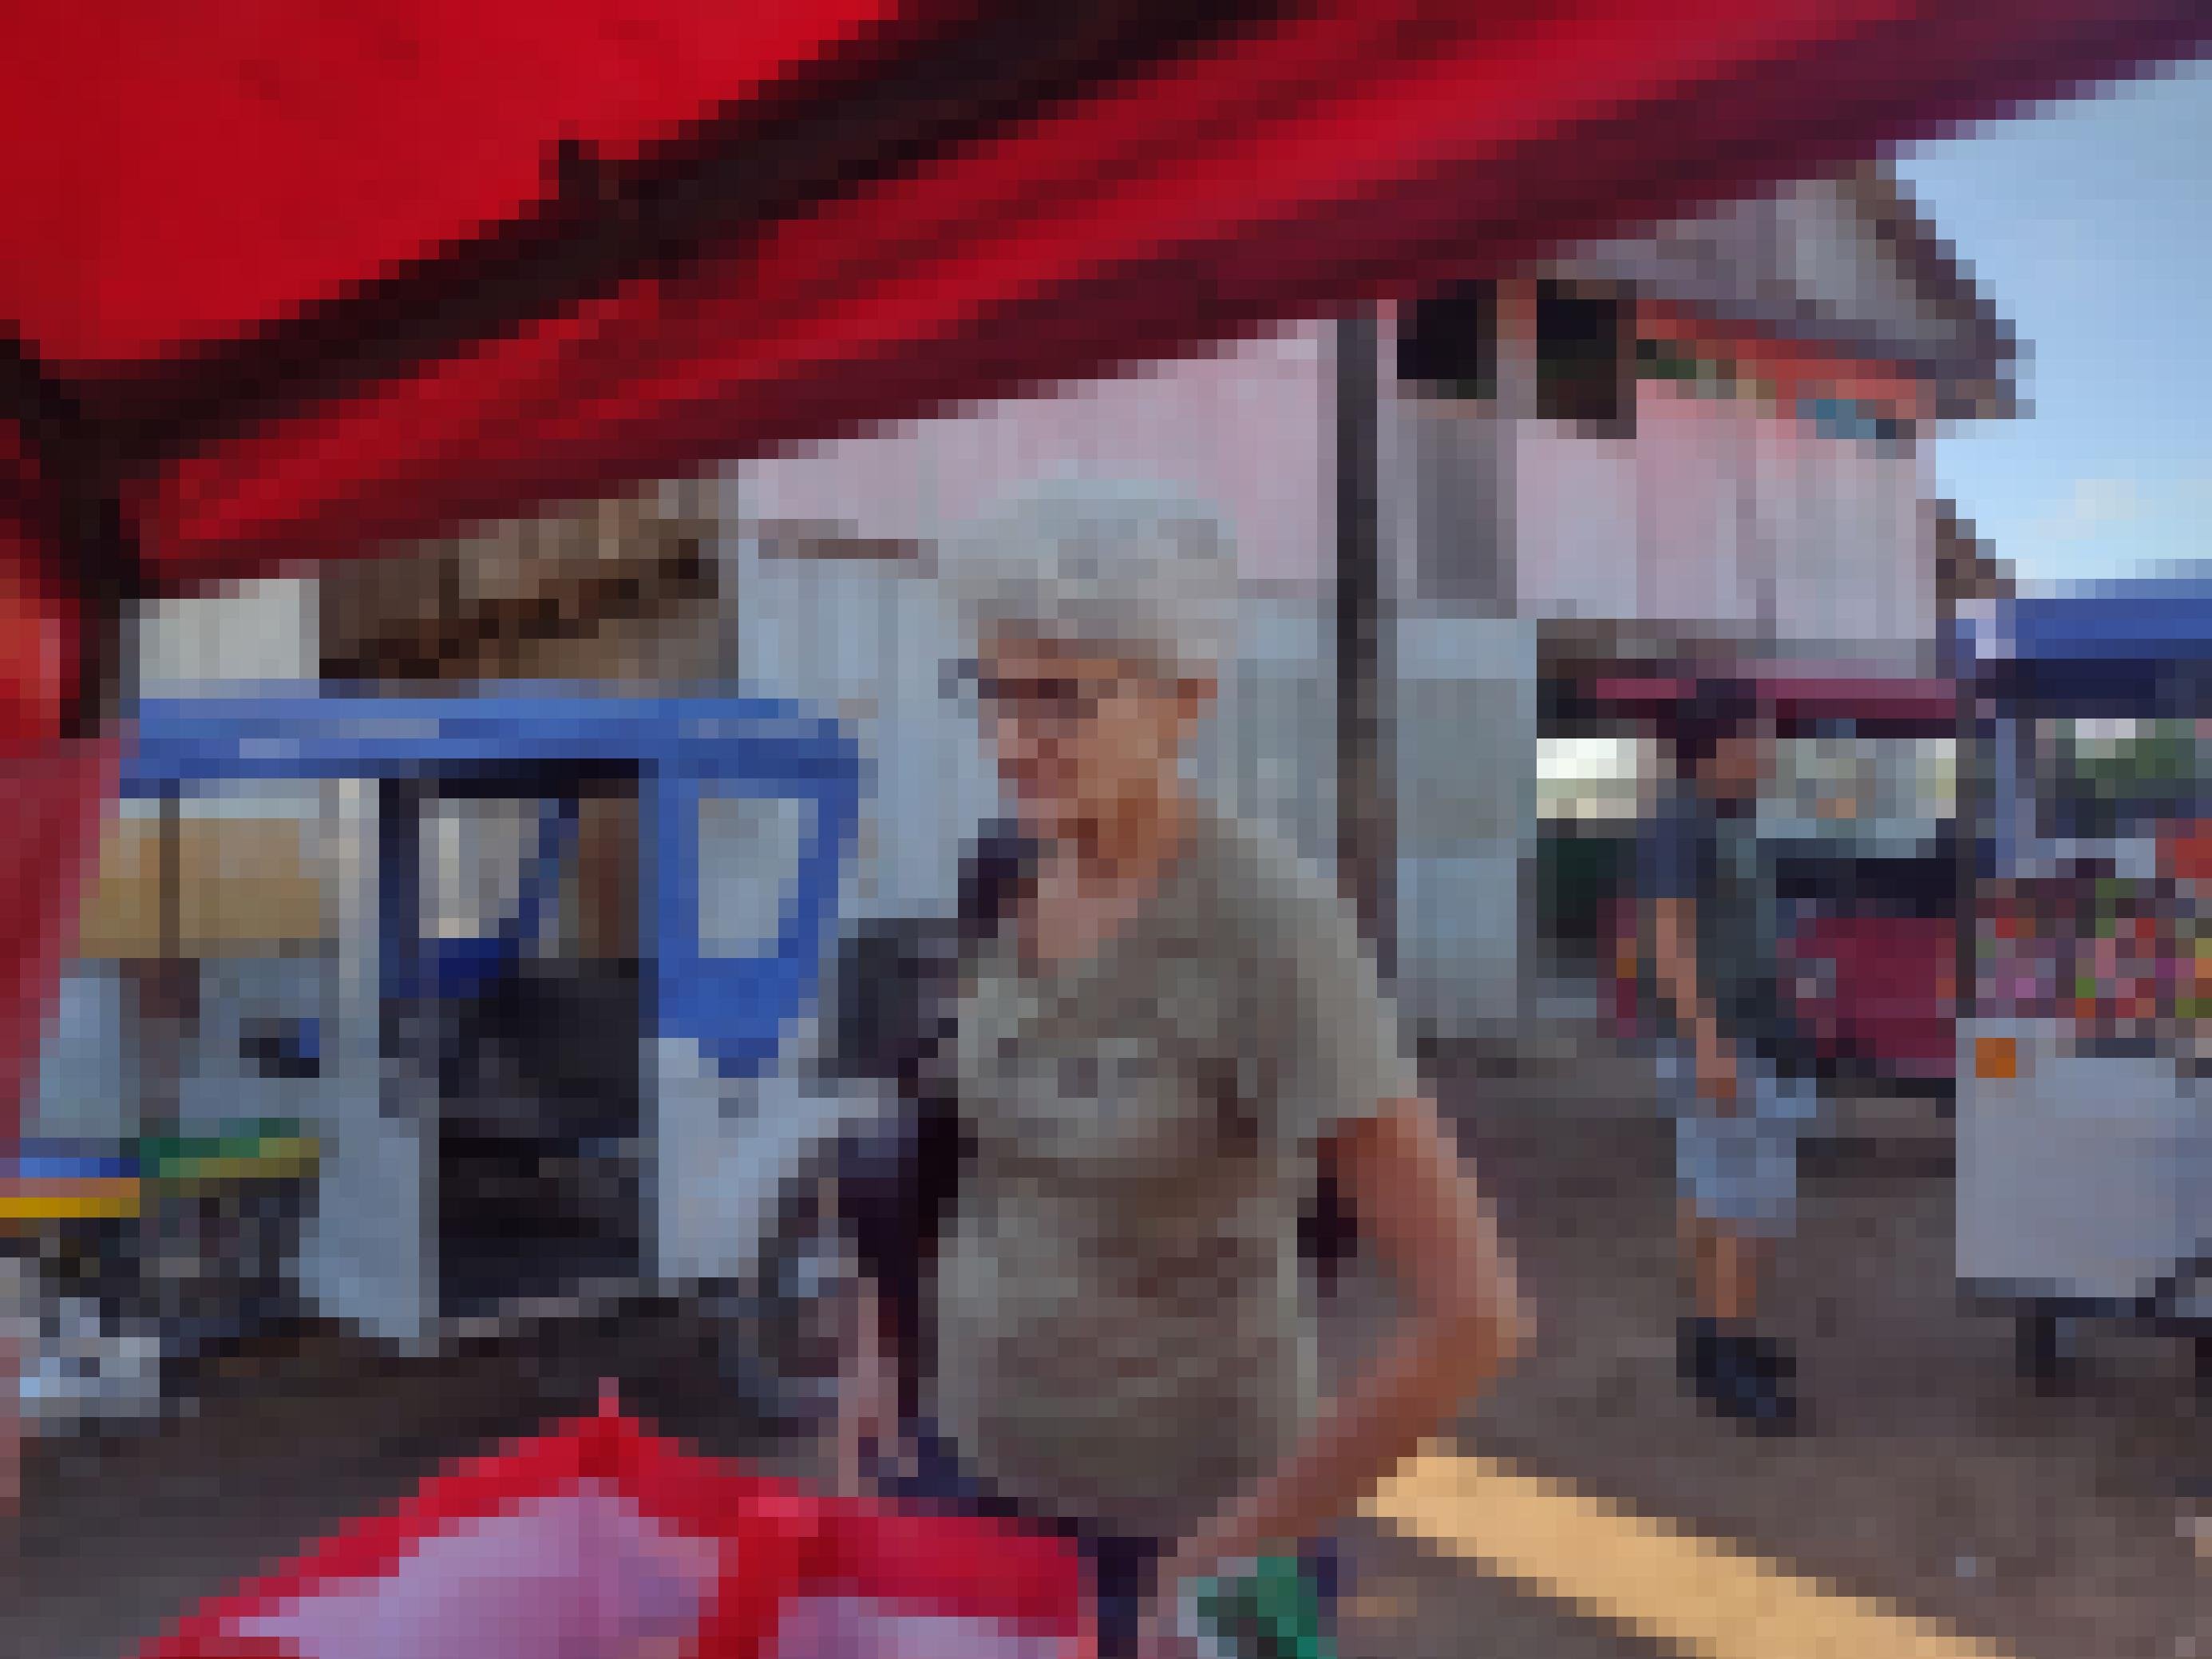 Mehrere Tuktuks. Frau mit weissen kurzen Haaren und Brille steht hinter einem Tuktuk und schaut auf eine Tasche vor ihr.